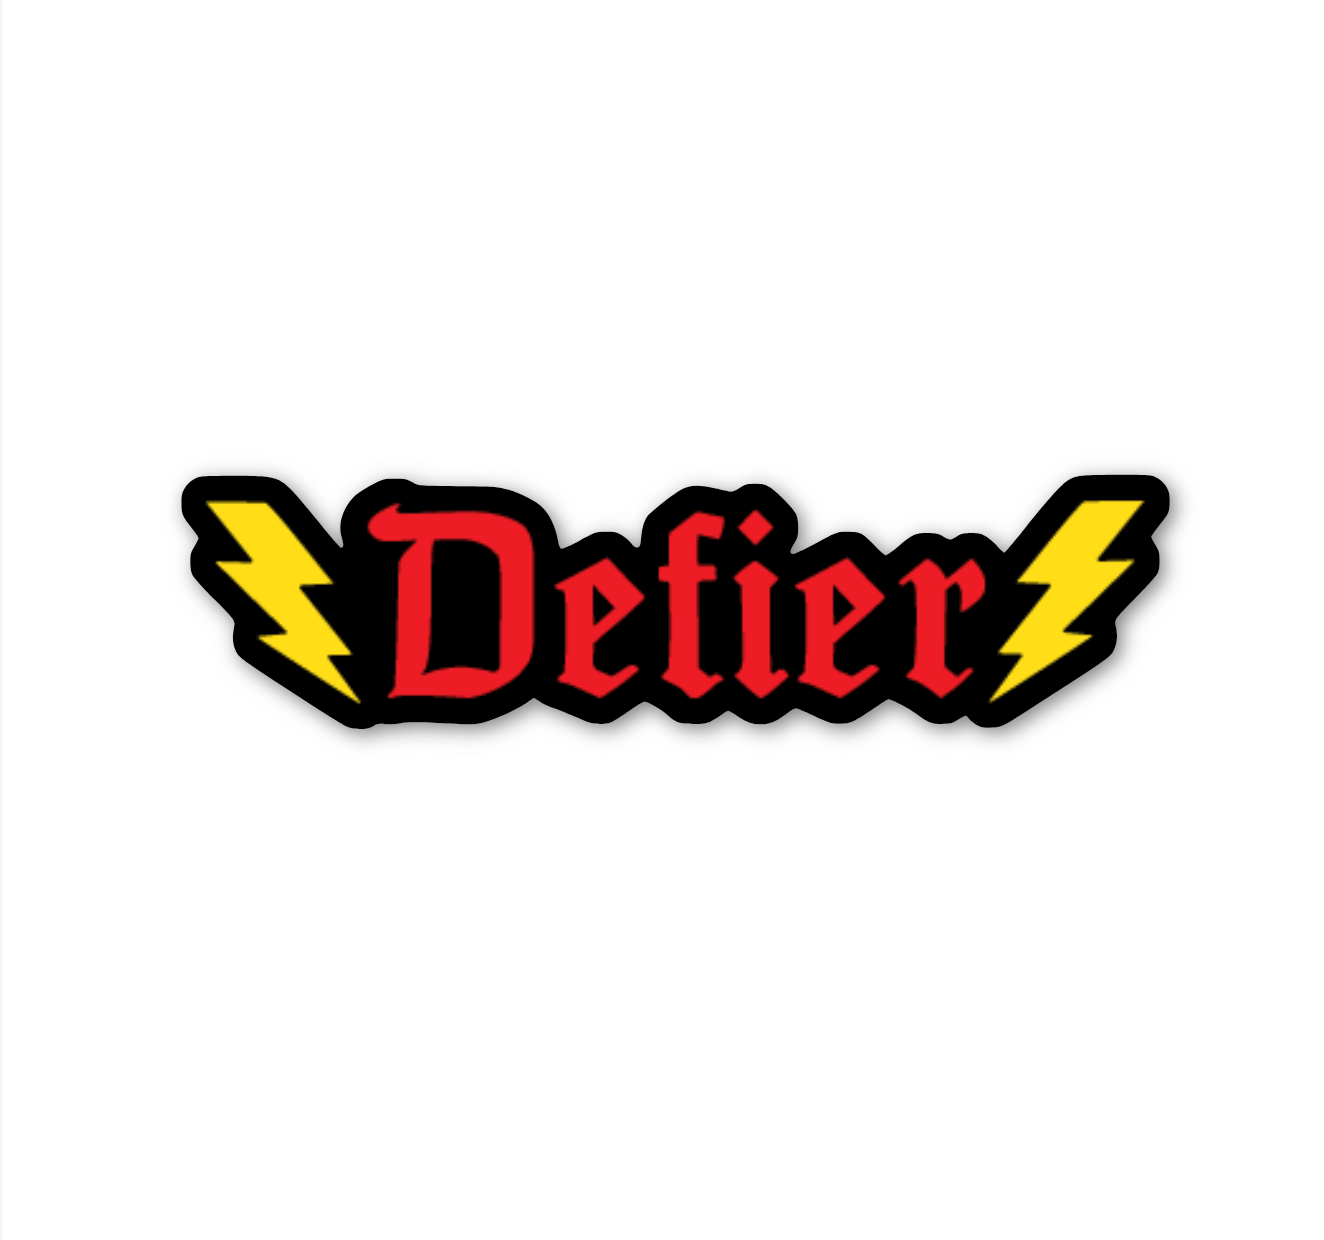 Defier - vinyl sticker